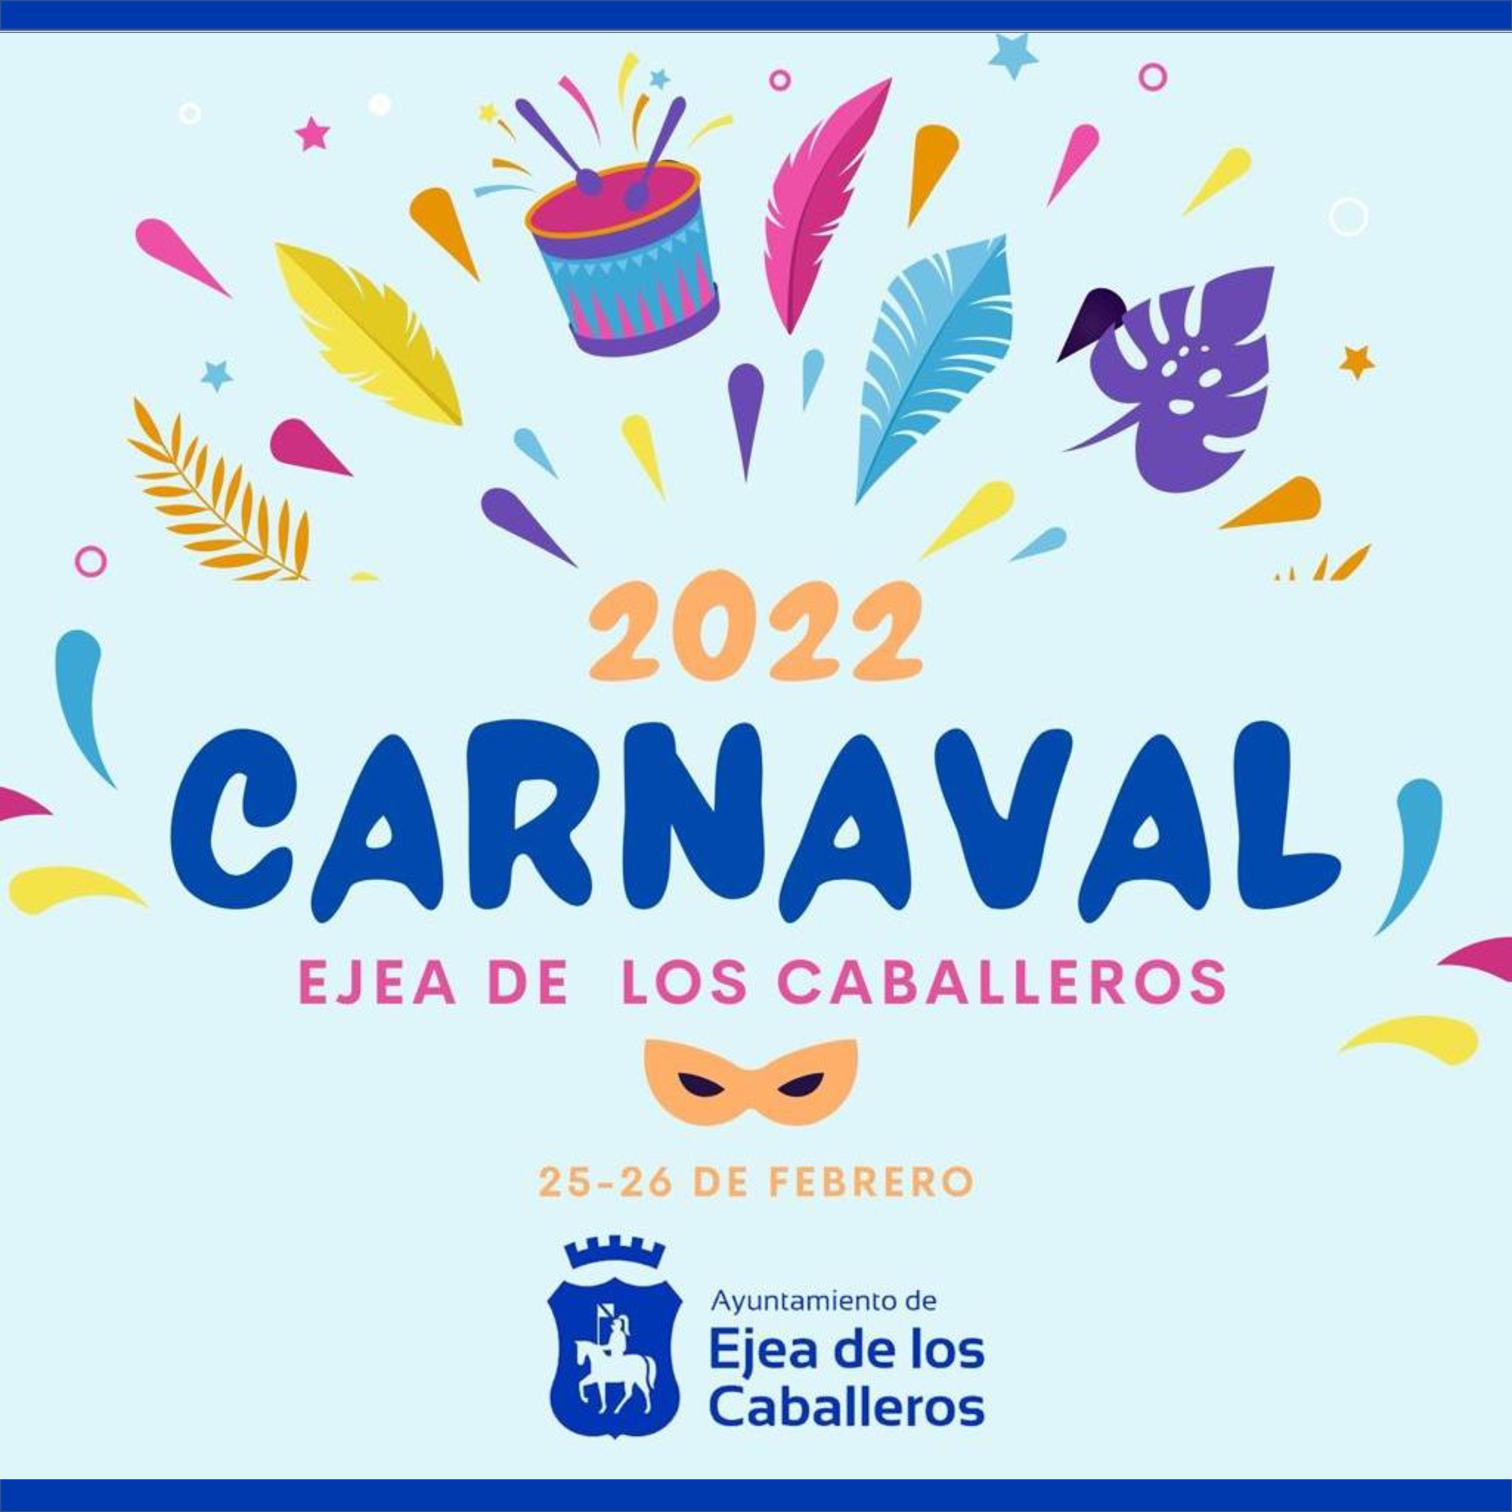 En este momento estás viendo Ejea de los Caballeros celebrará un carnaval responsable con actos culturales y recreativos los días 25 y 26 de febrero